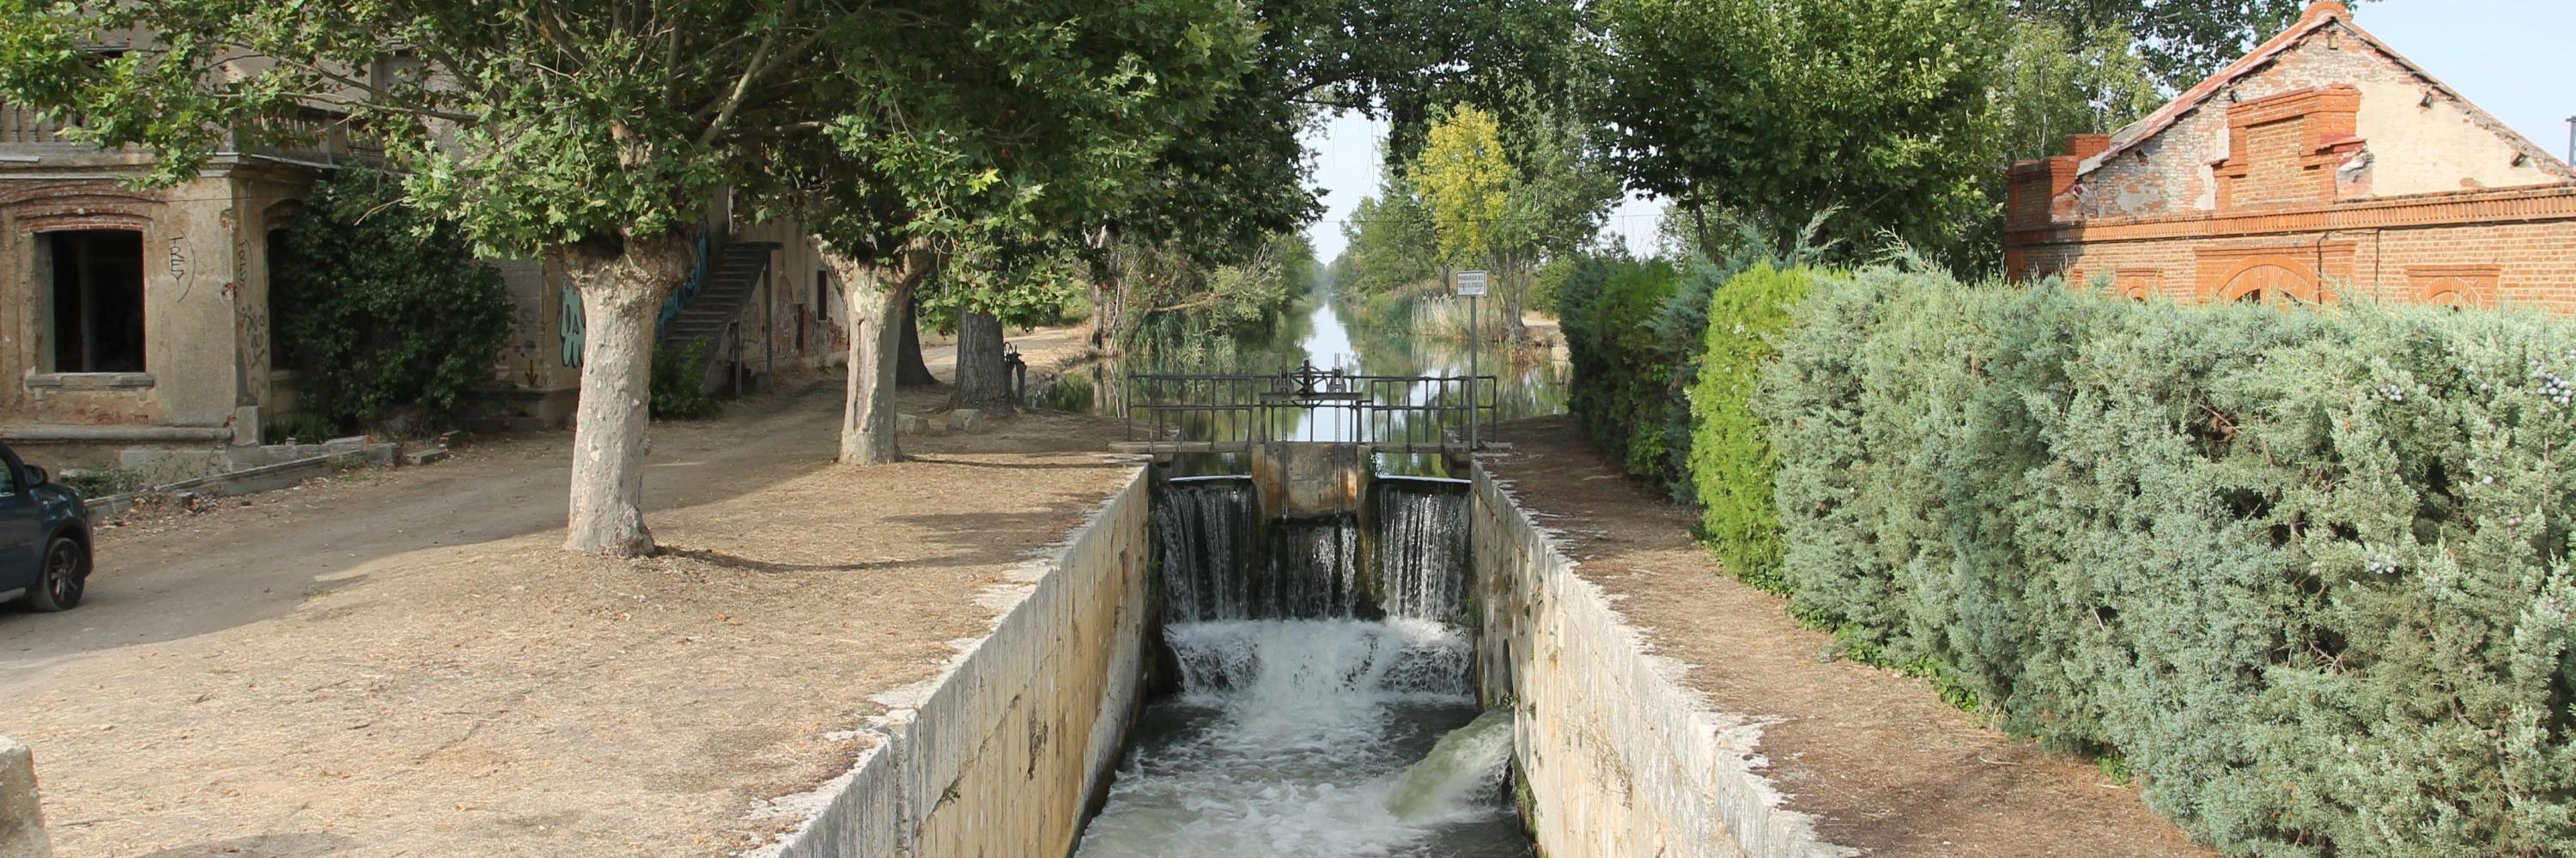 Esclusa 40 Canal de Castilla